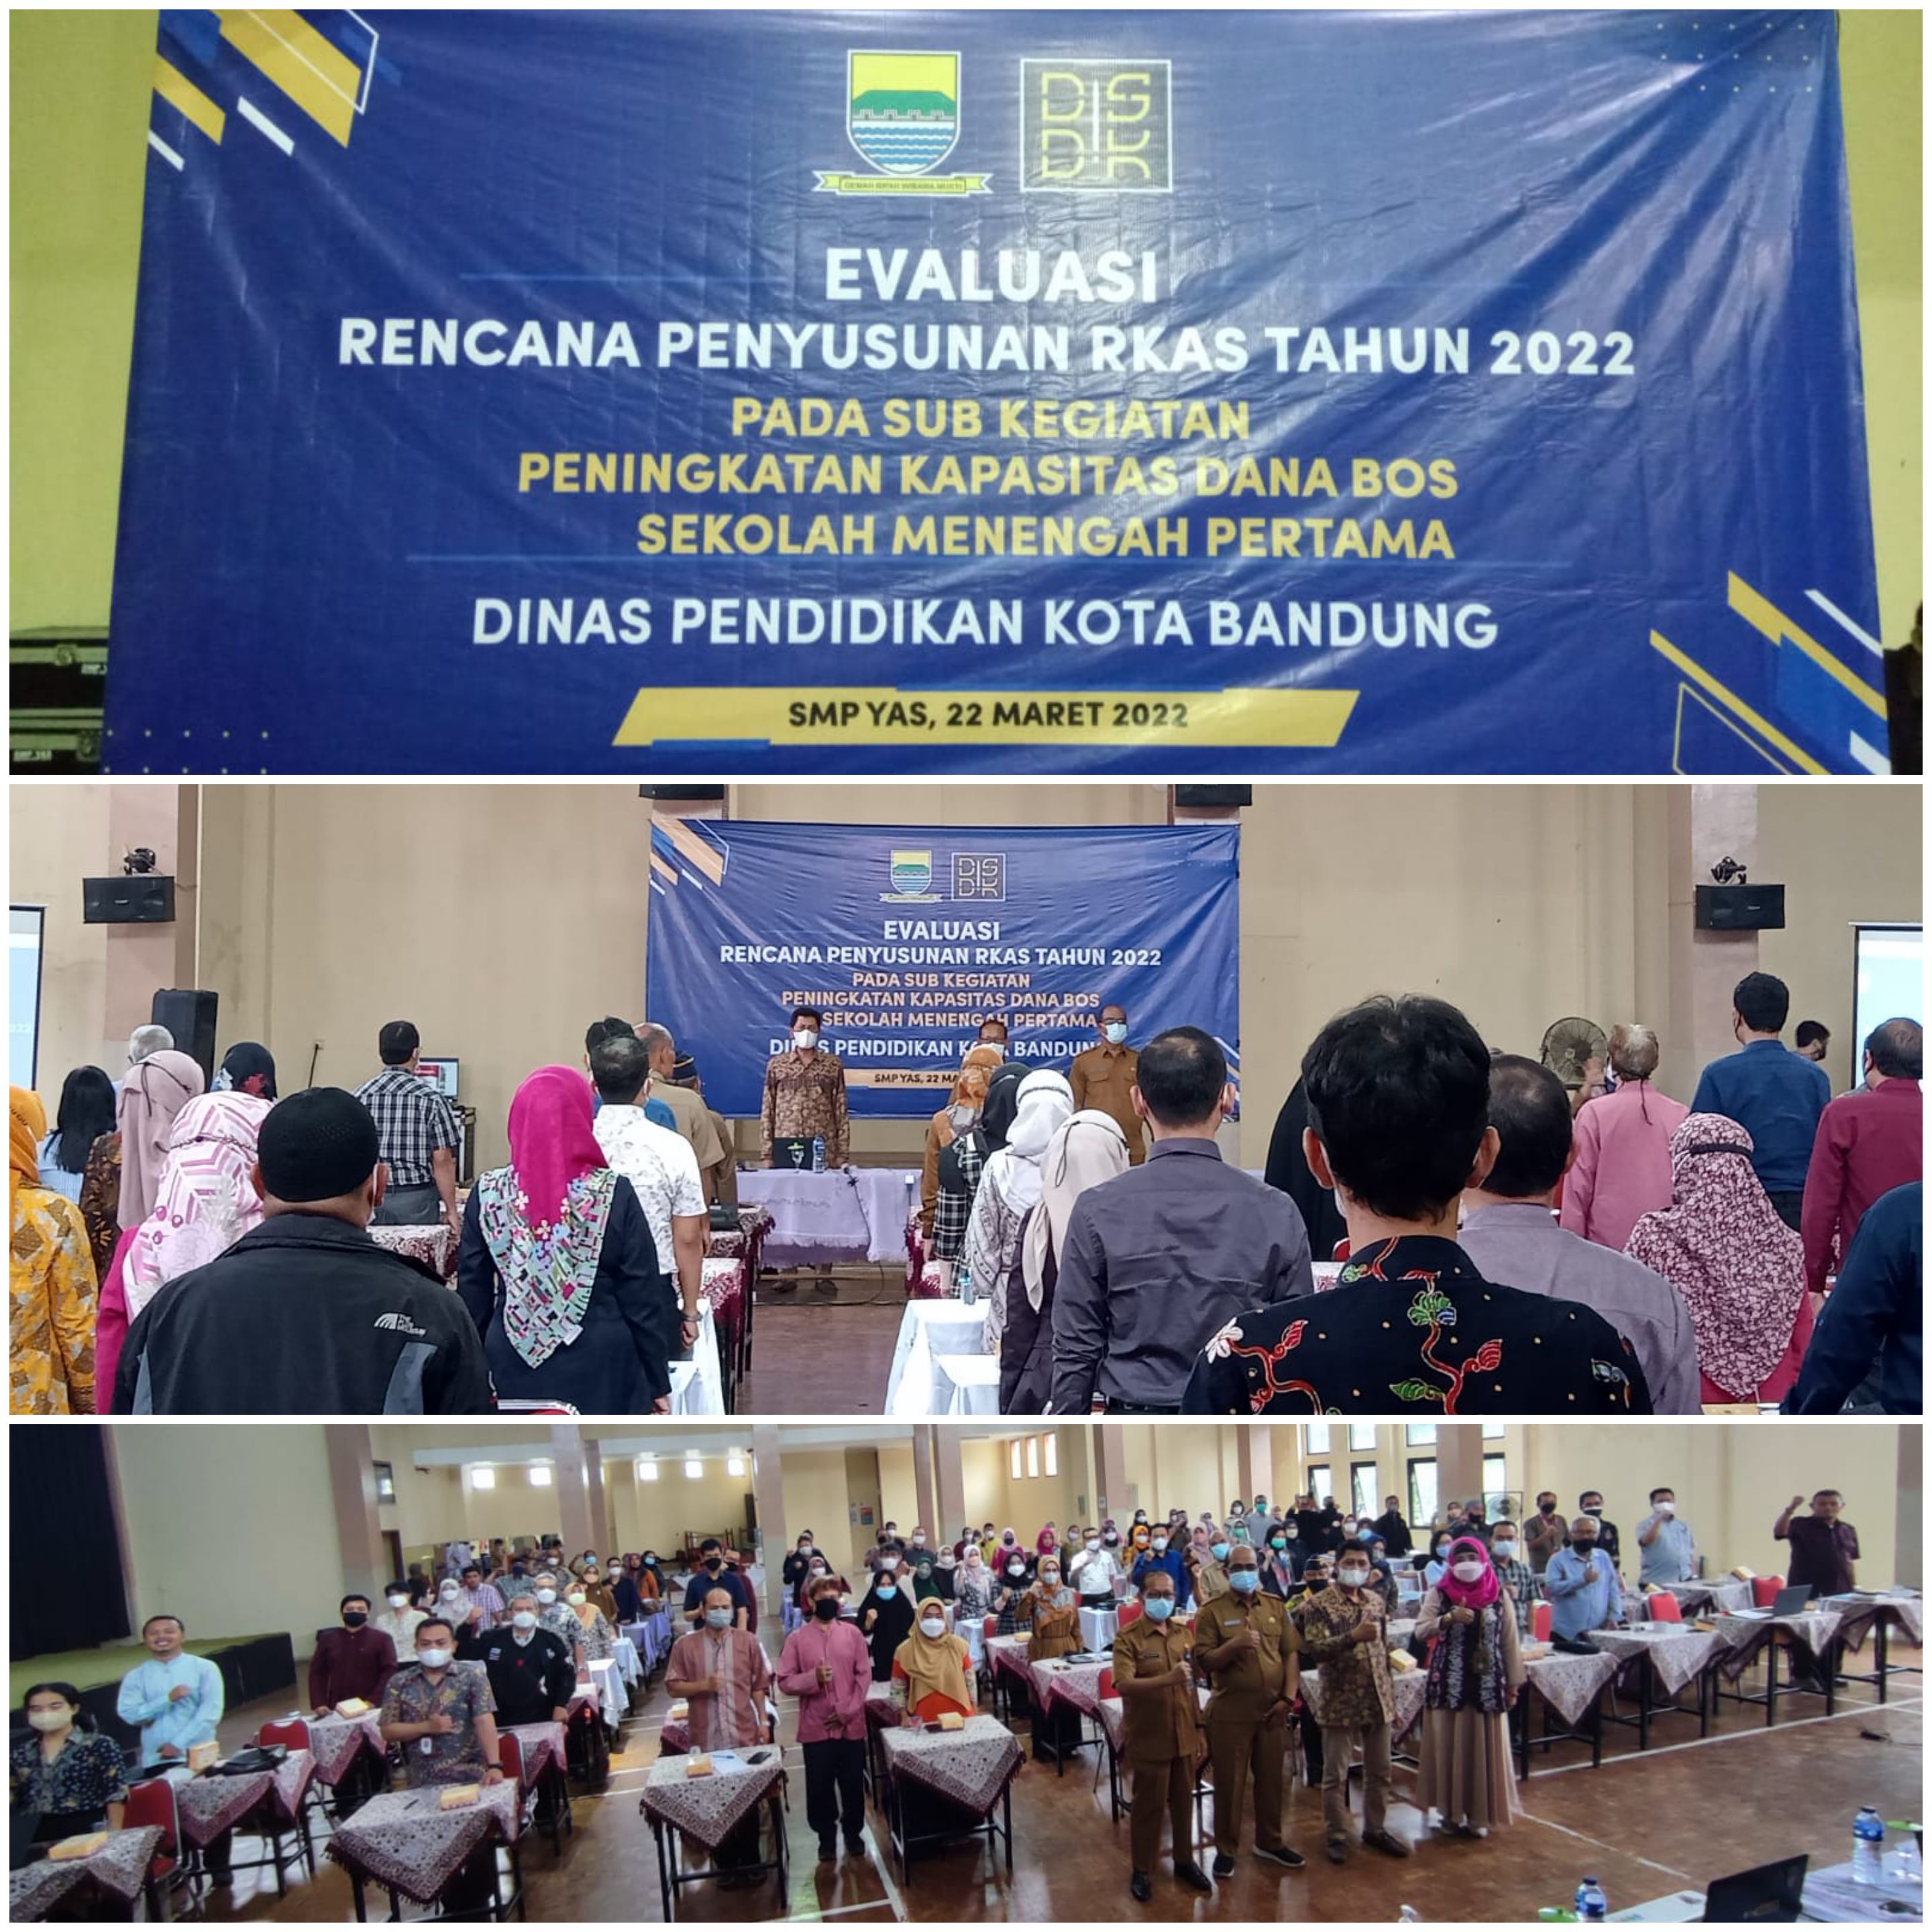 Kegiatan Evaluasi Rencana Penyusunan RKAS Tahun 2022 - Dinas Pendidikan Kota Bandung (22 Maret 2022)